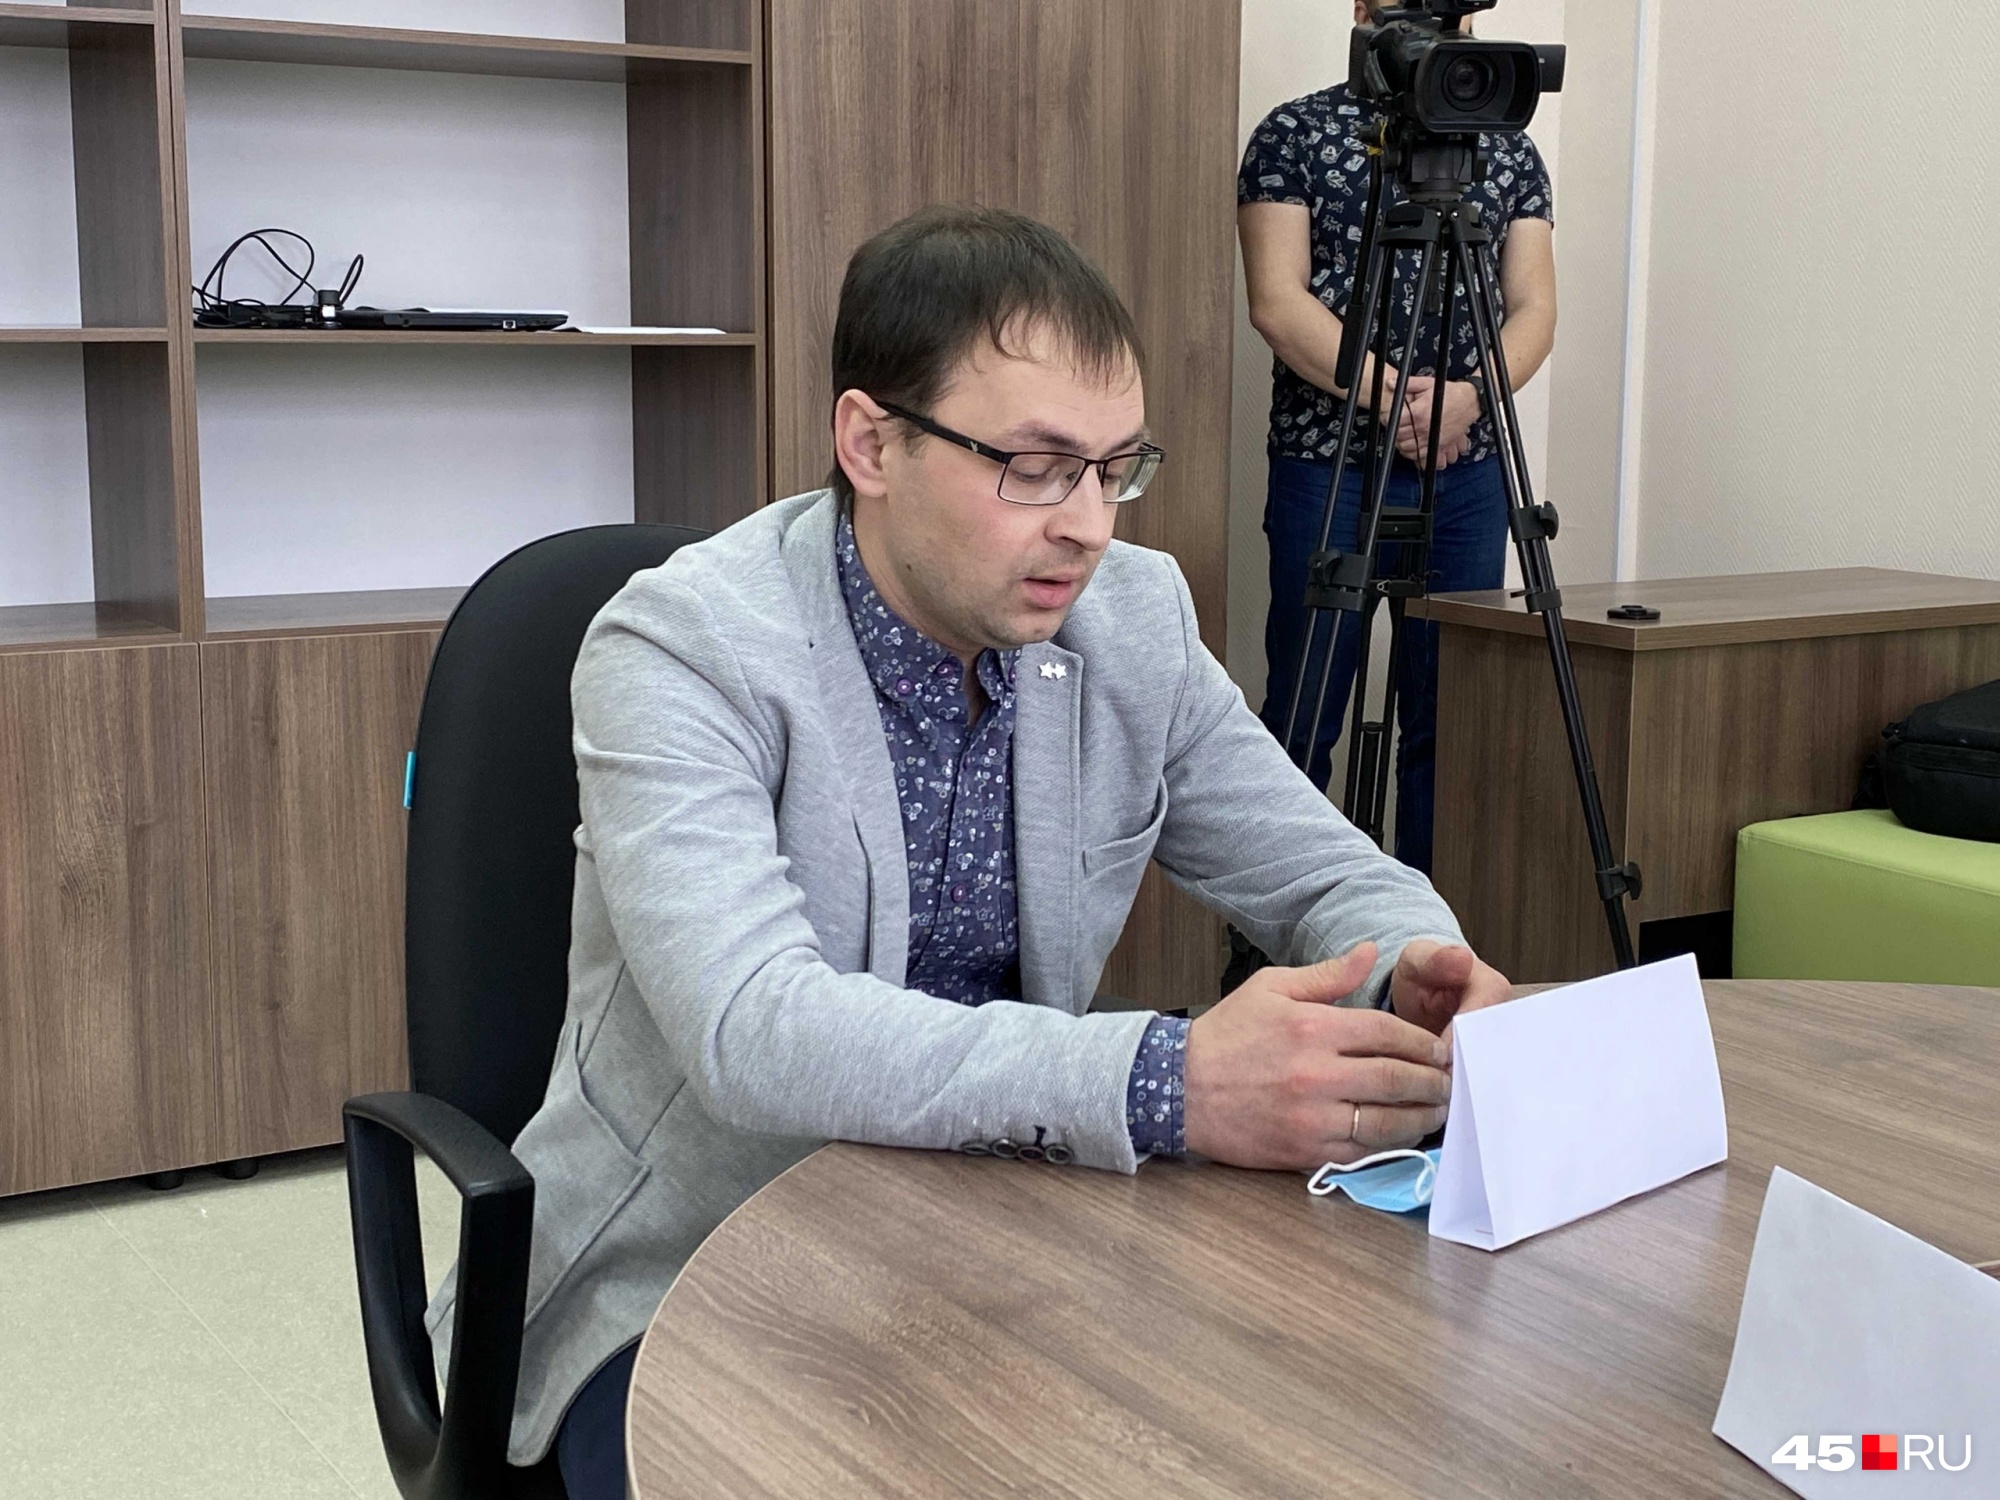 Алексей Плаксин от имени застройщика предложил способы решения проблемы со школой в Кетово